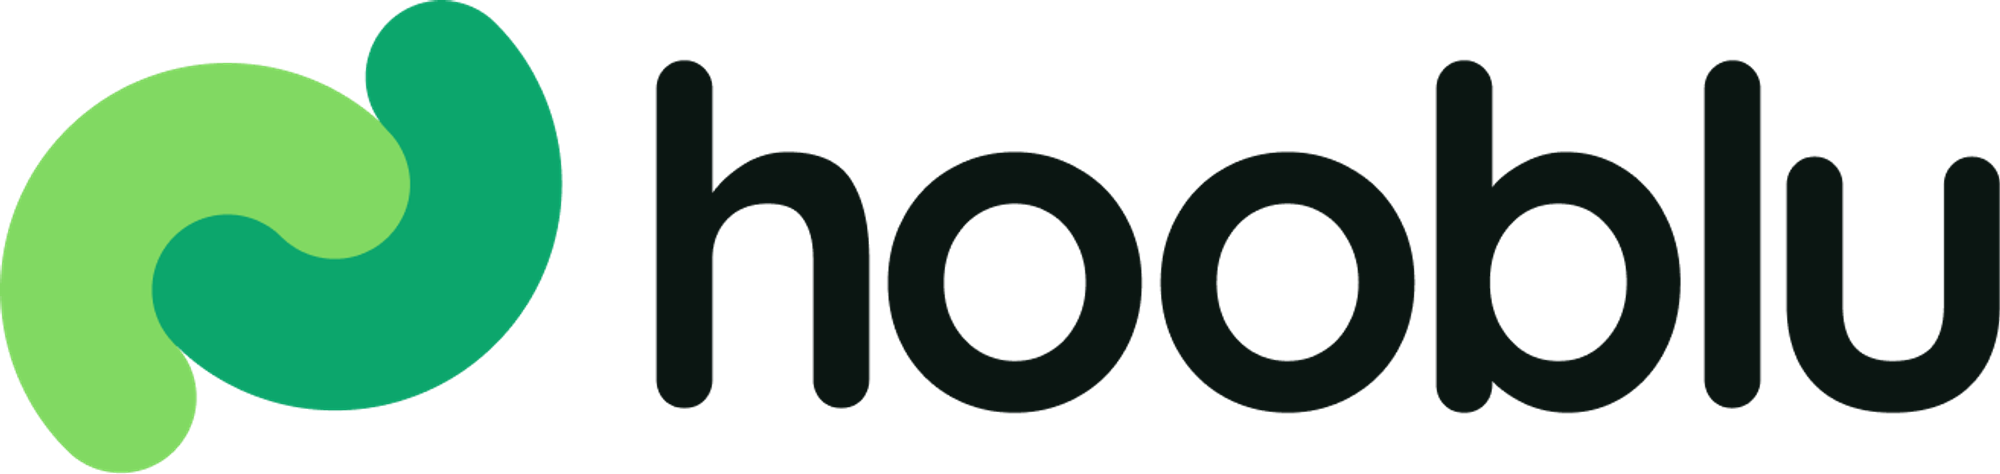 Modern logo design for hooblu.com